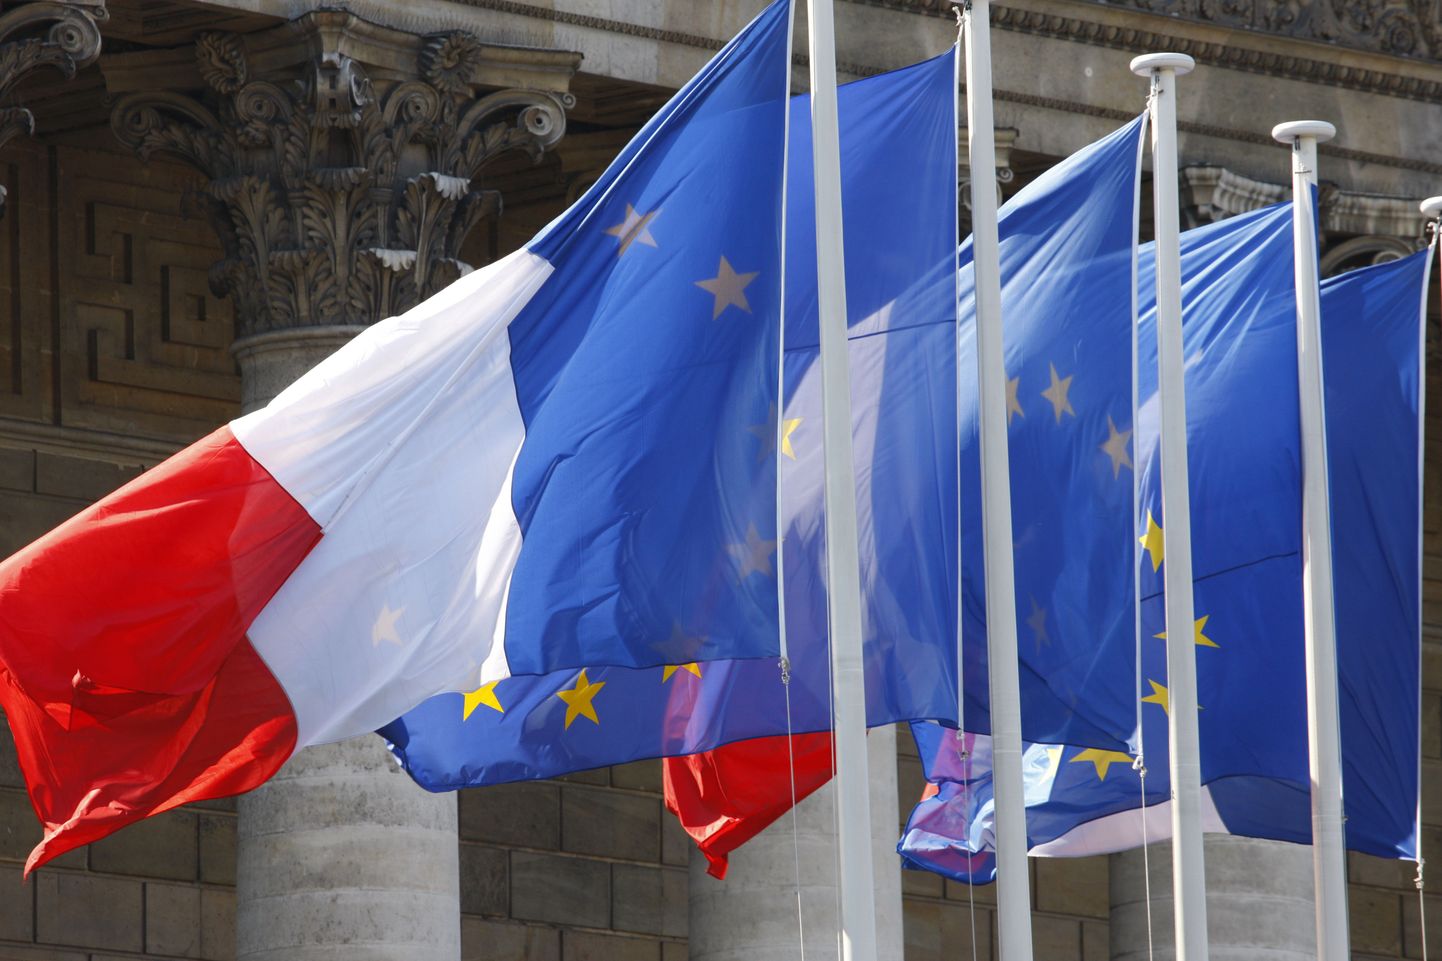 Prantsuse ja ELi lipud.